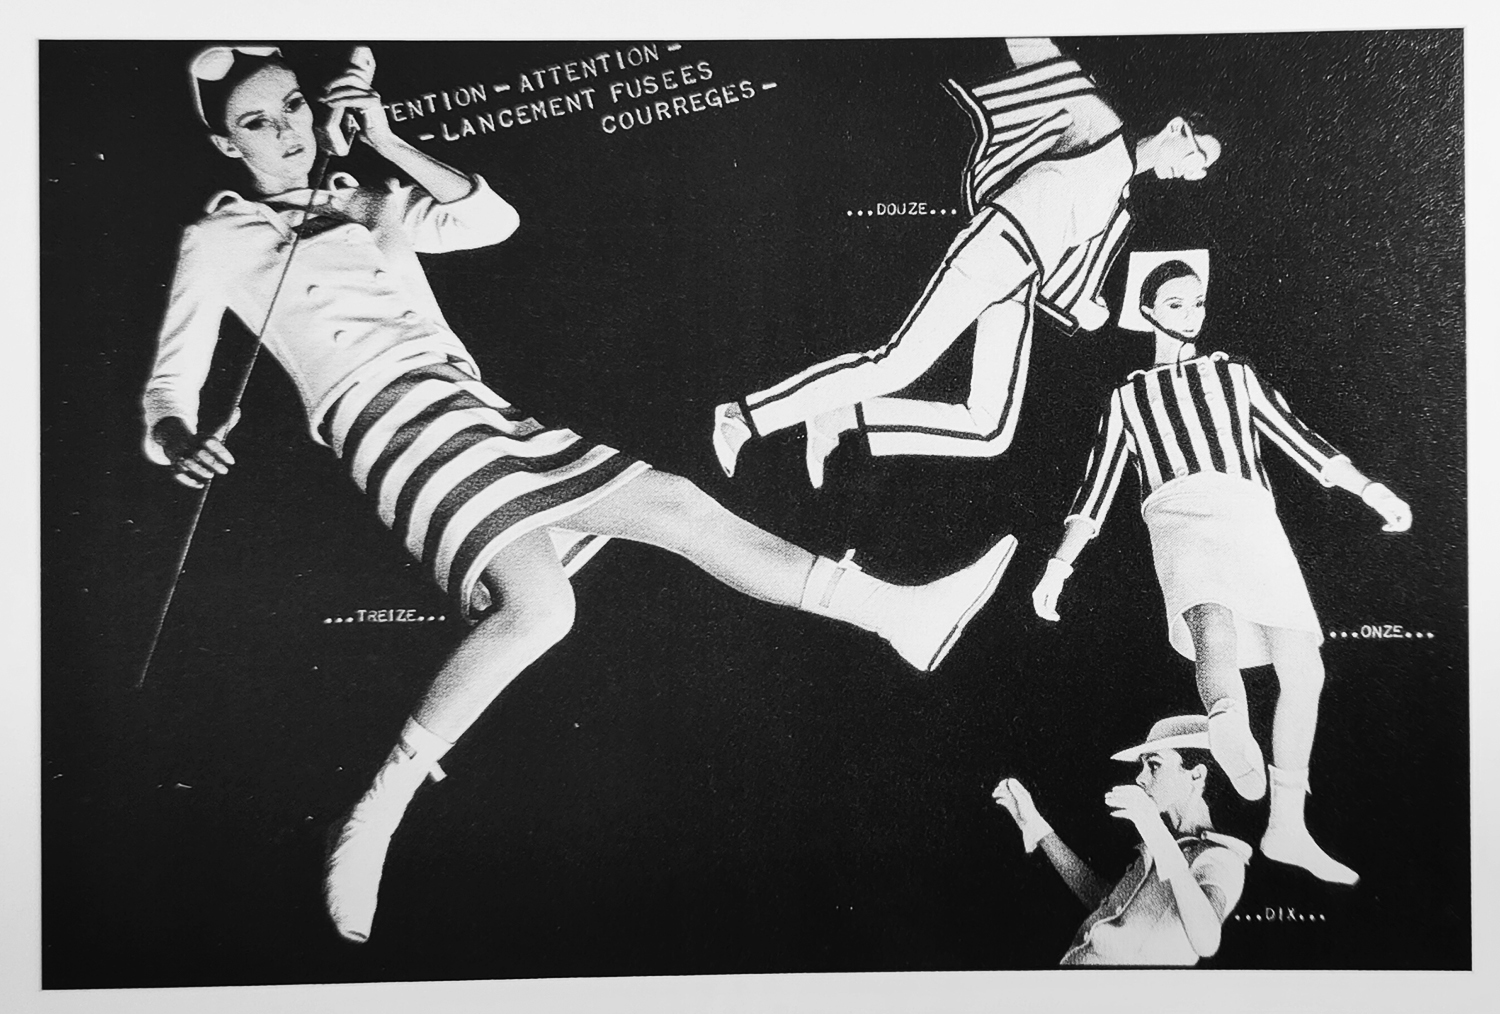 pages Courrèges de Peter Knapp pour le magazine Elle, 1965, image extraite du livre "Histoire du graphisme en France" de Michel Wlassikoff, page 206